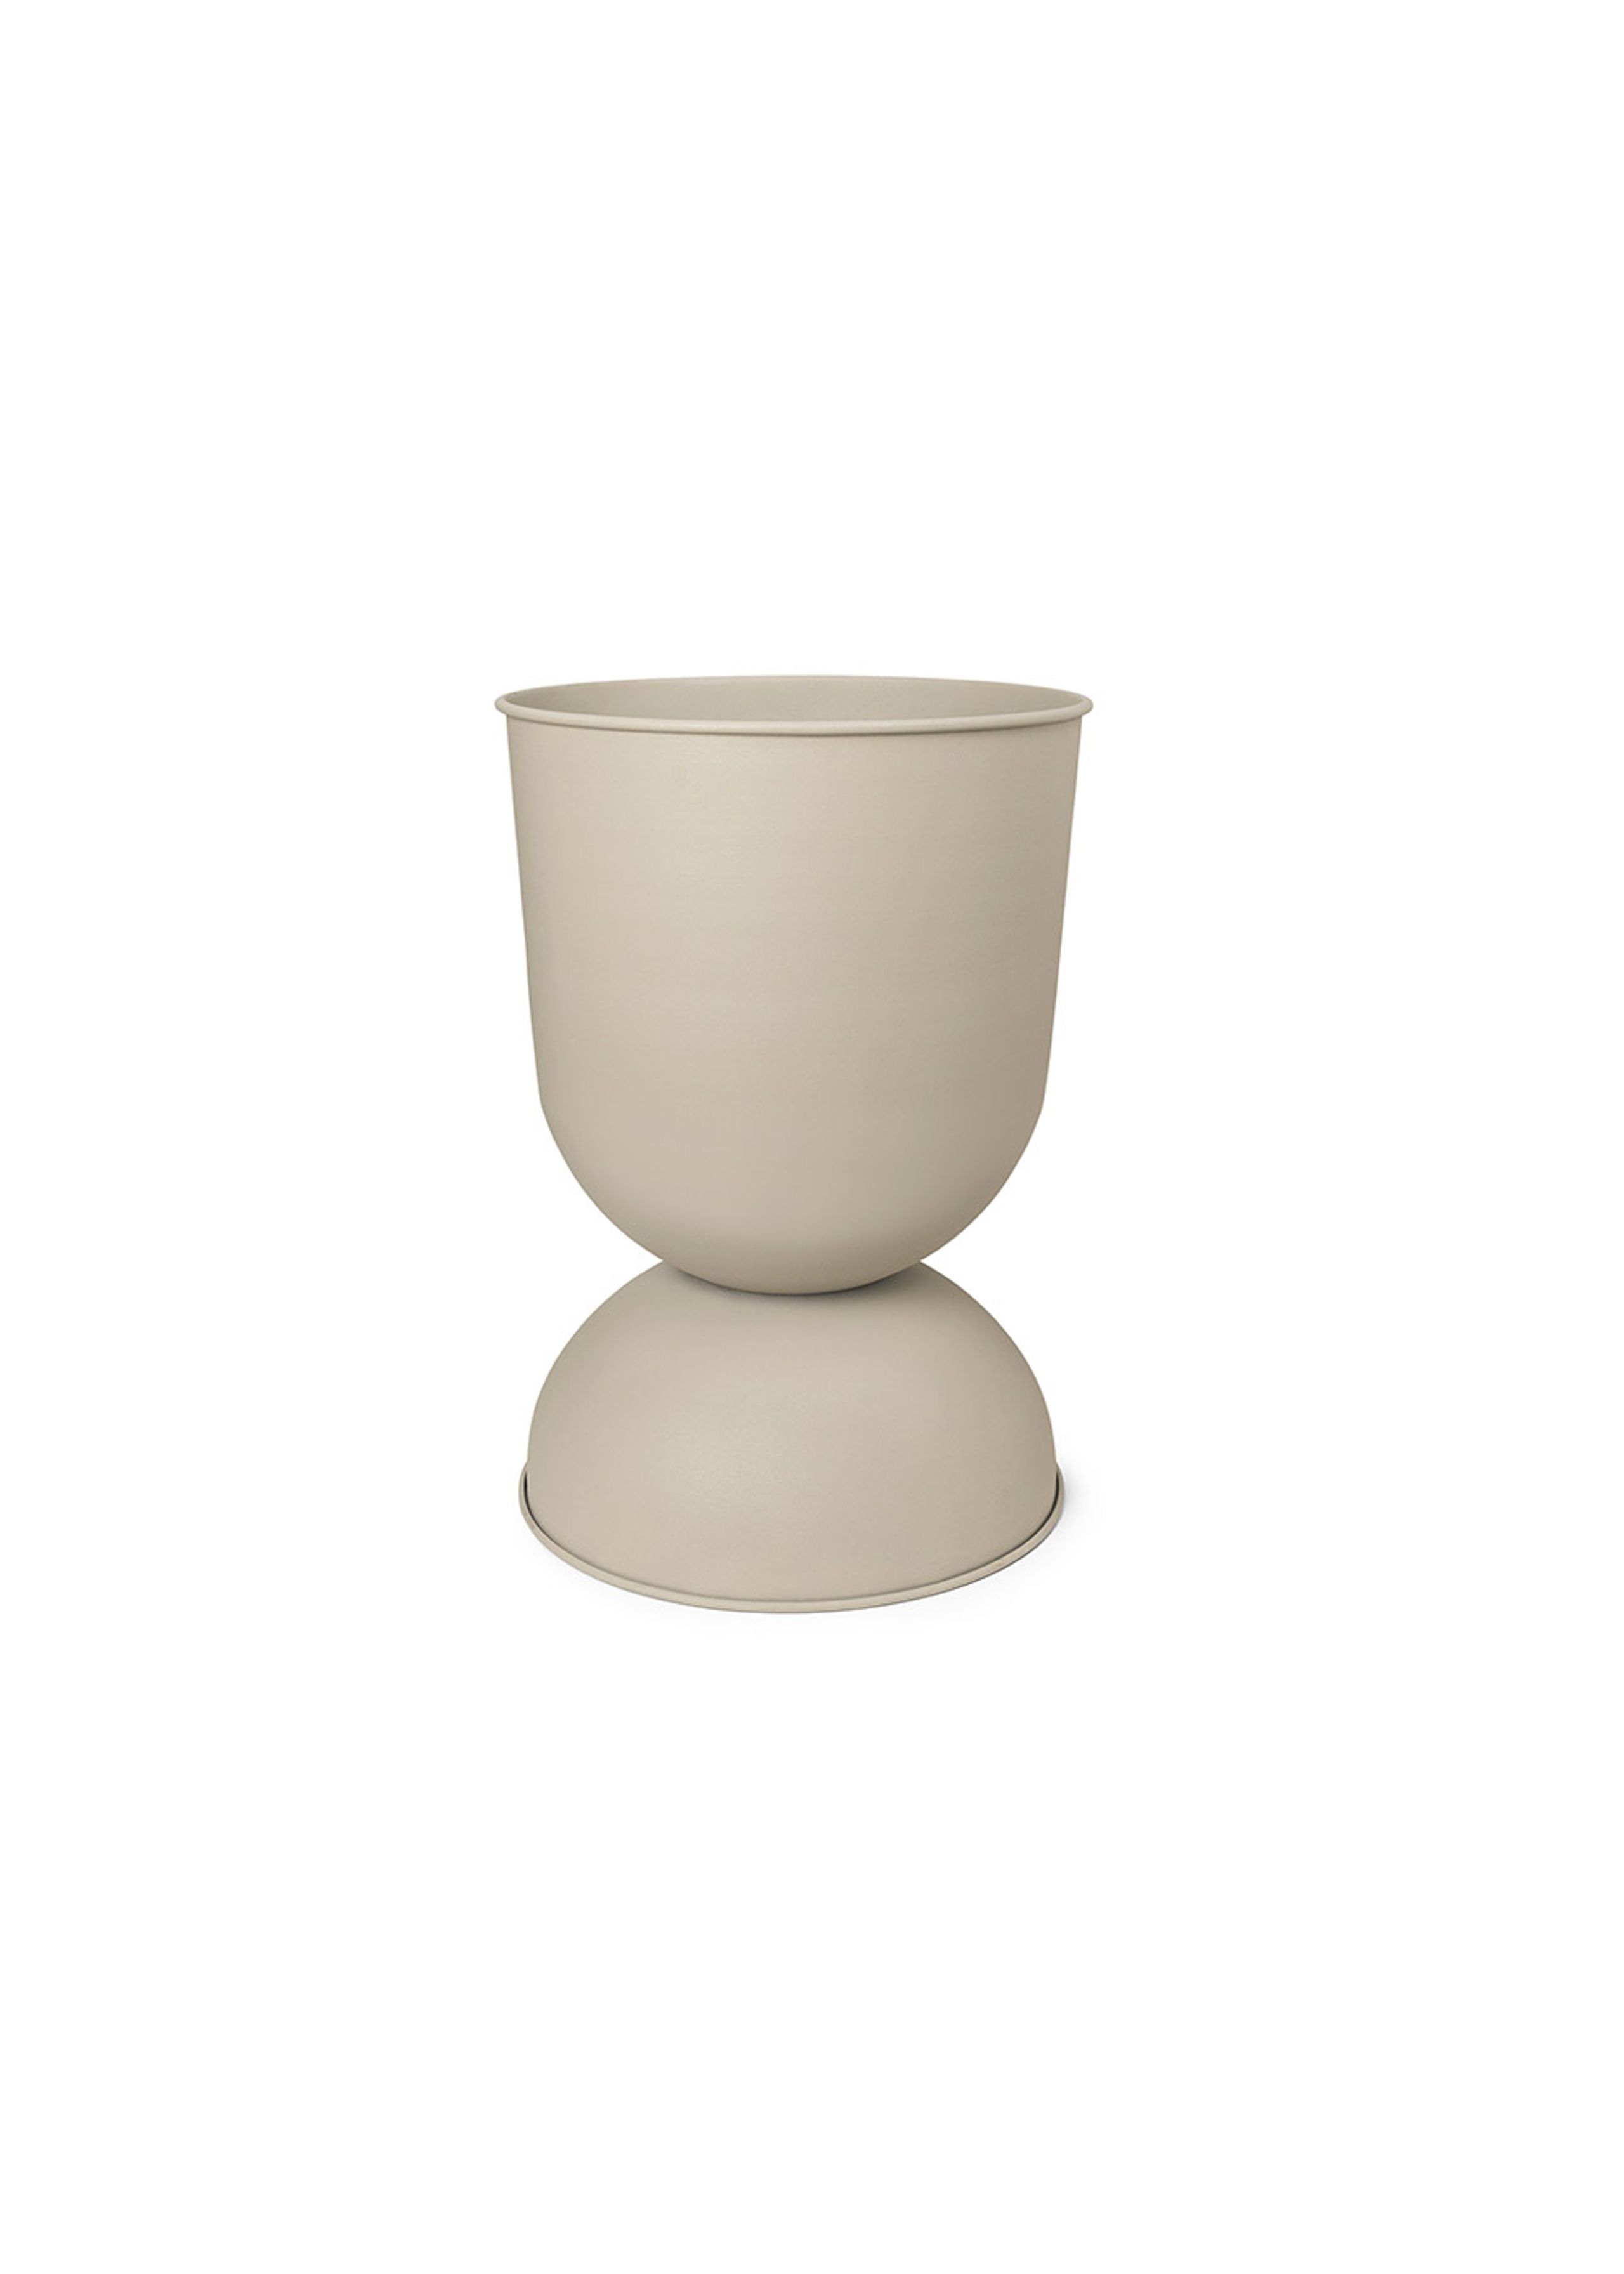 Ferm Living - Pot de fleurs - Hourglass Pots - Cashmere - Small